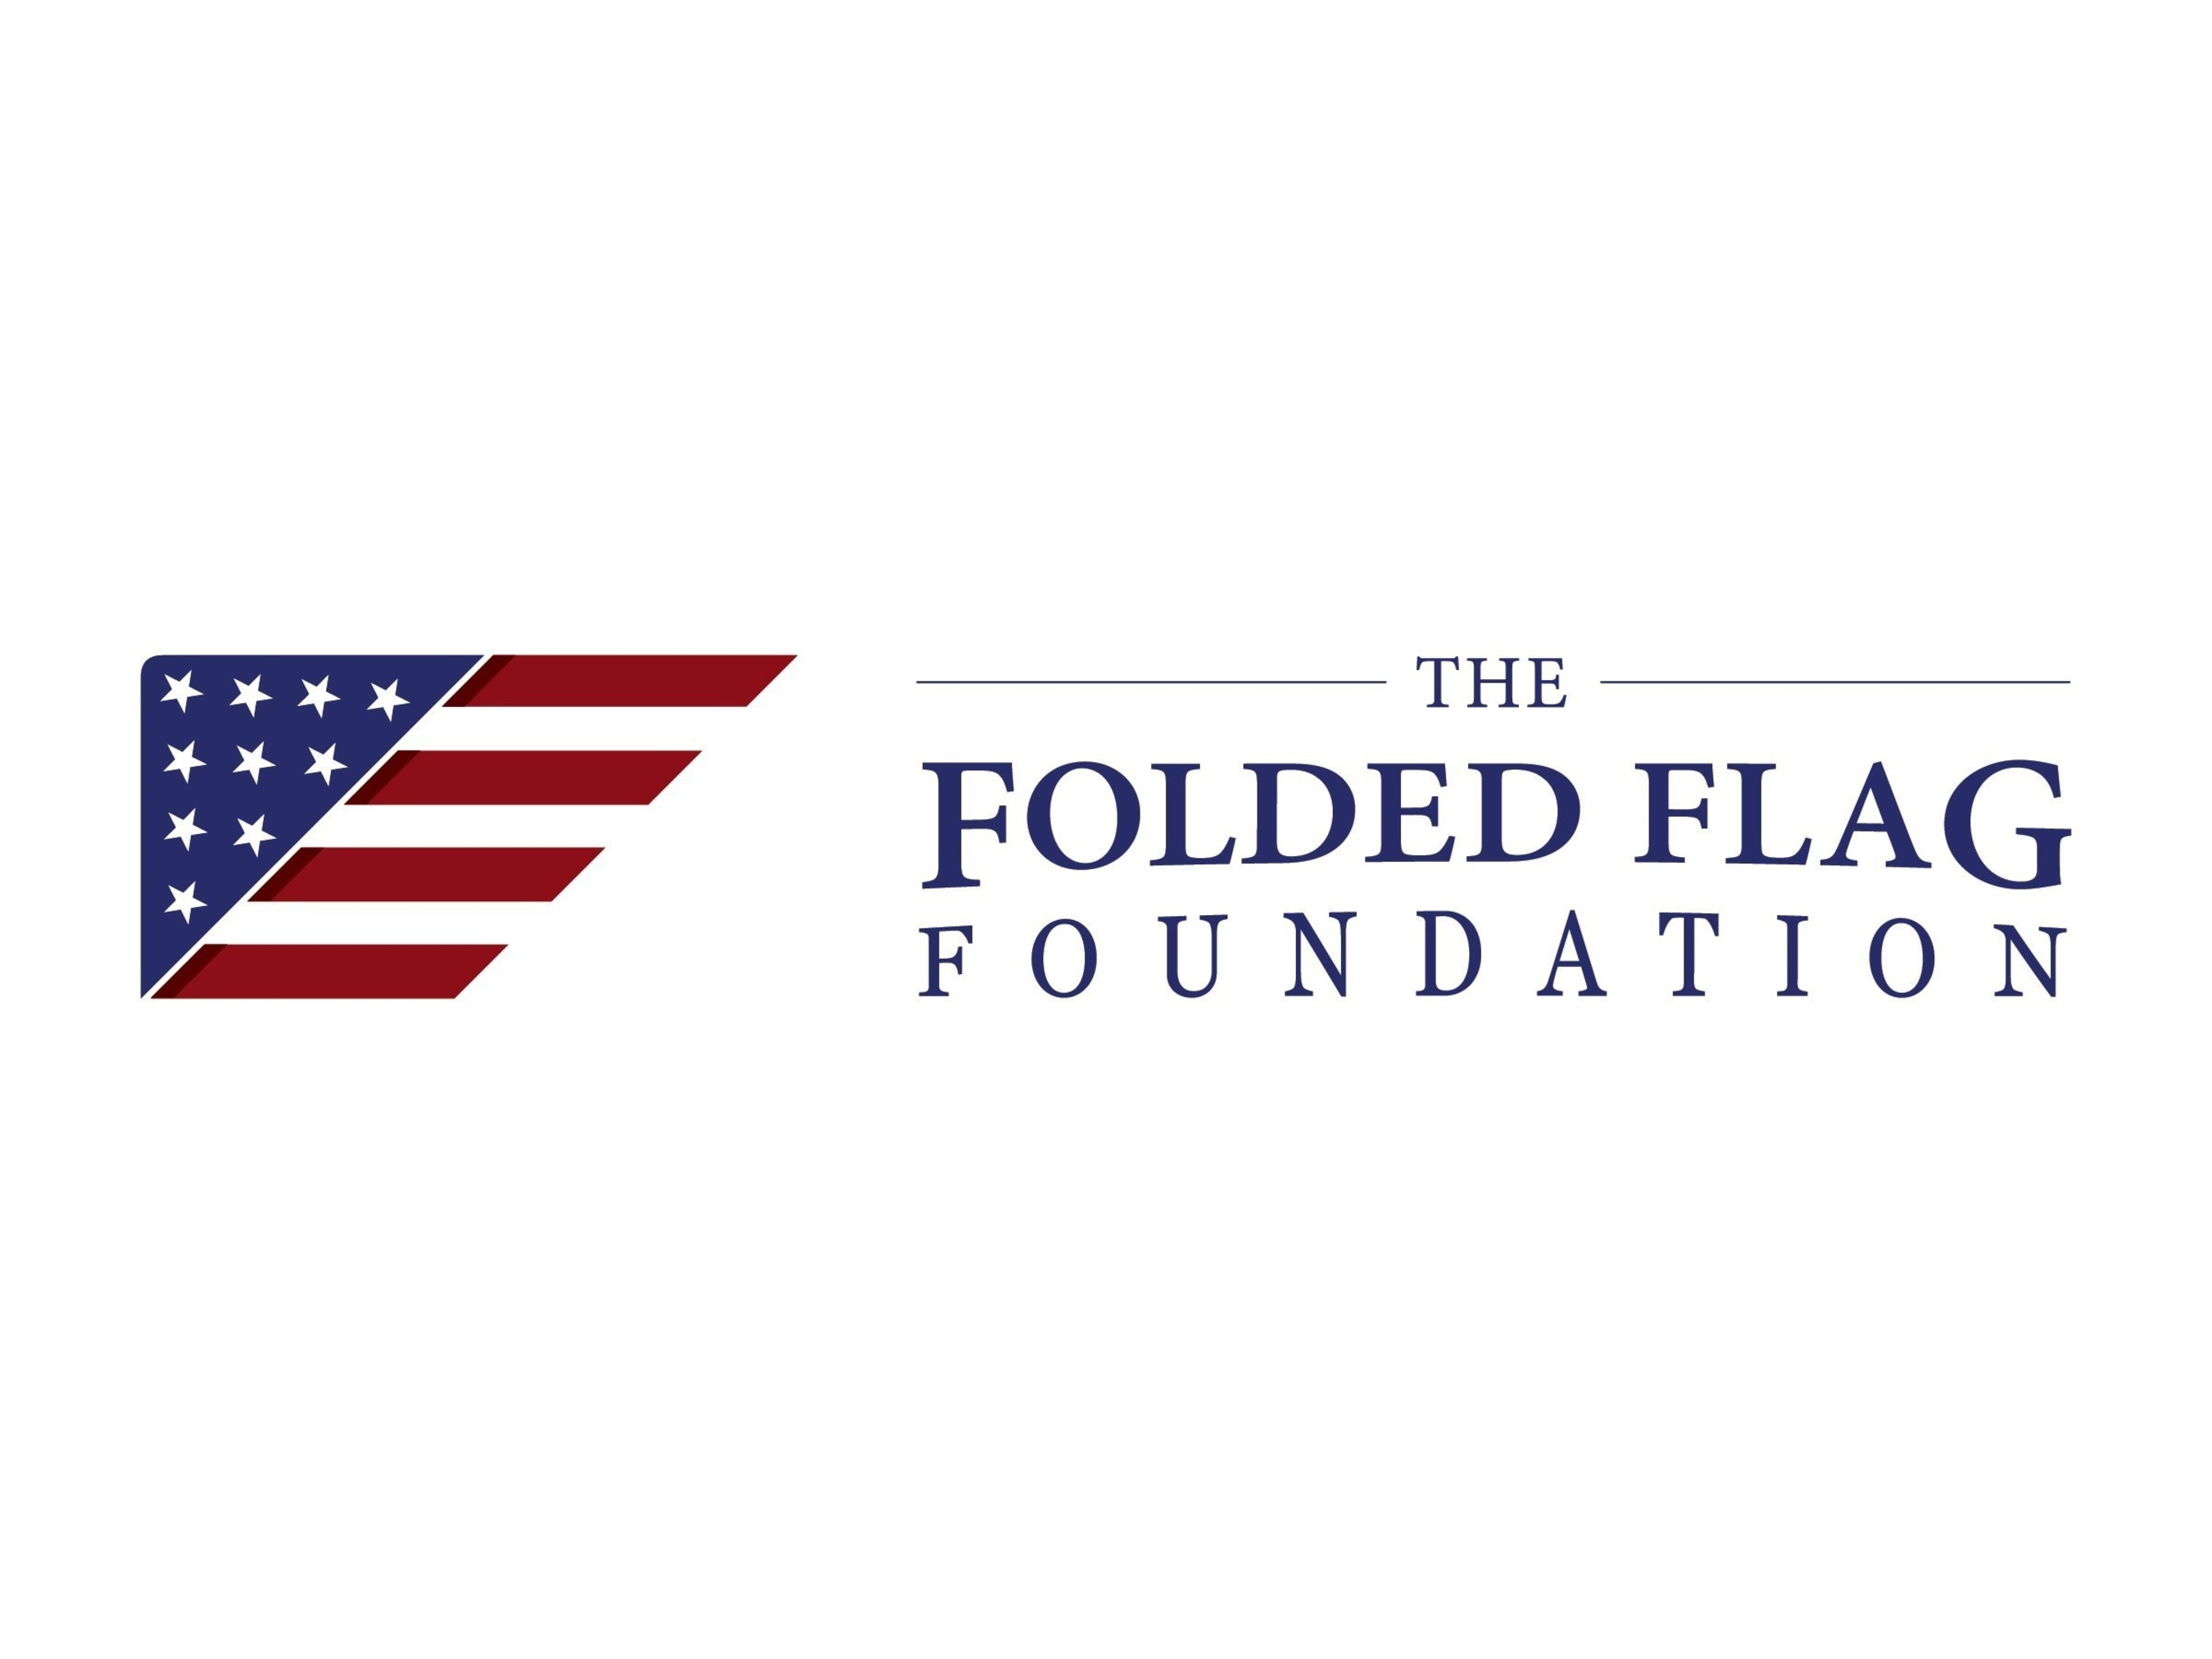 www.FoldedFlagFoundation.org